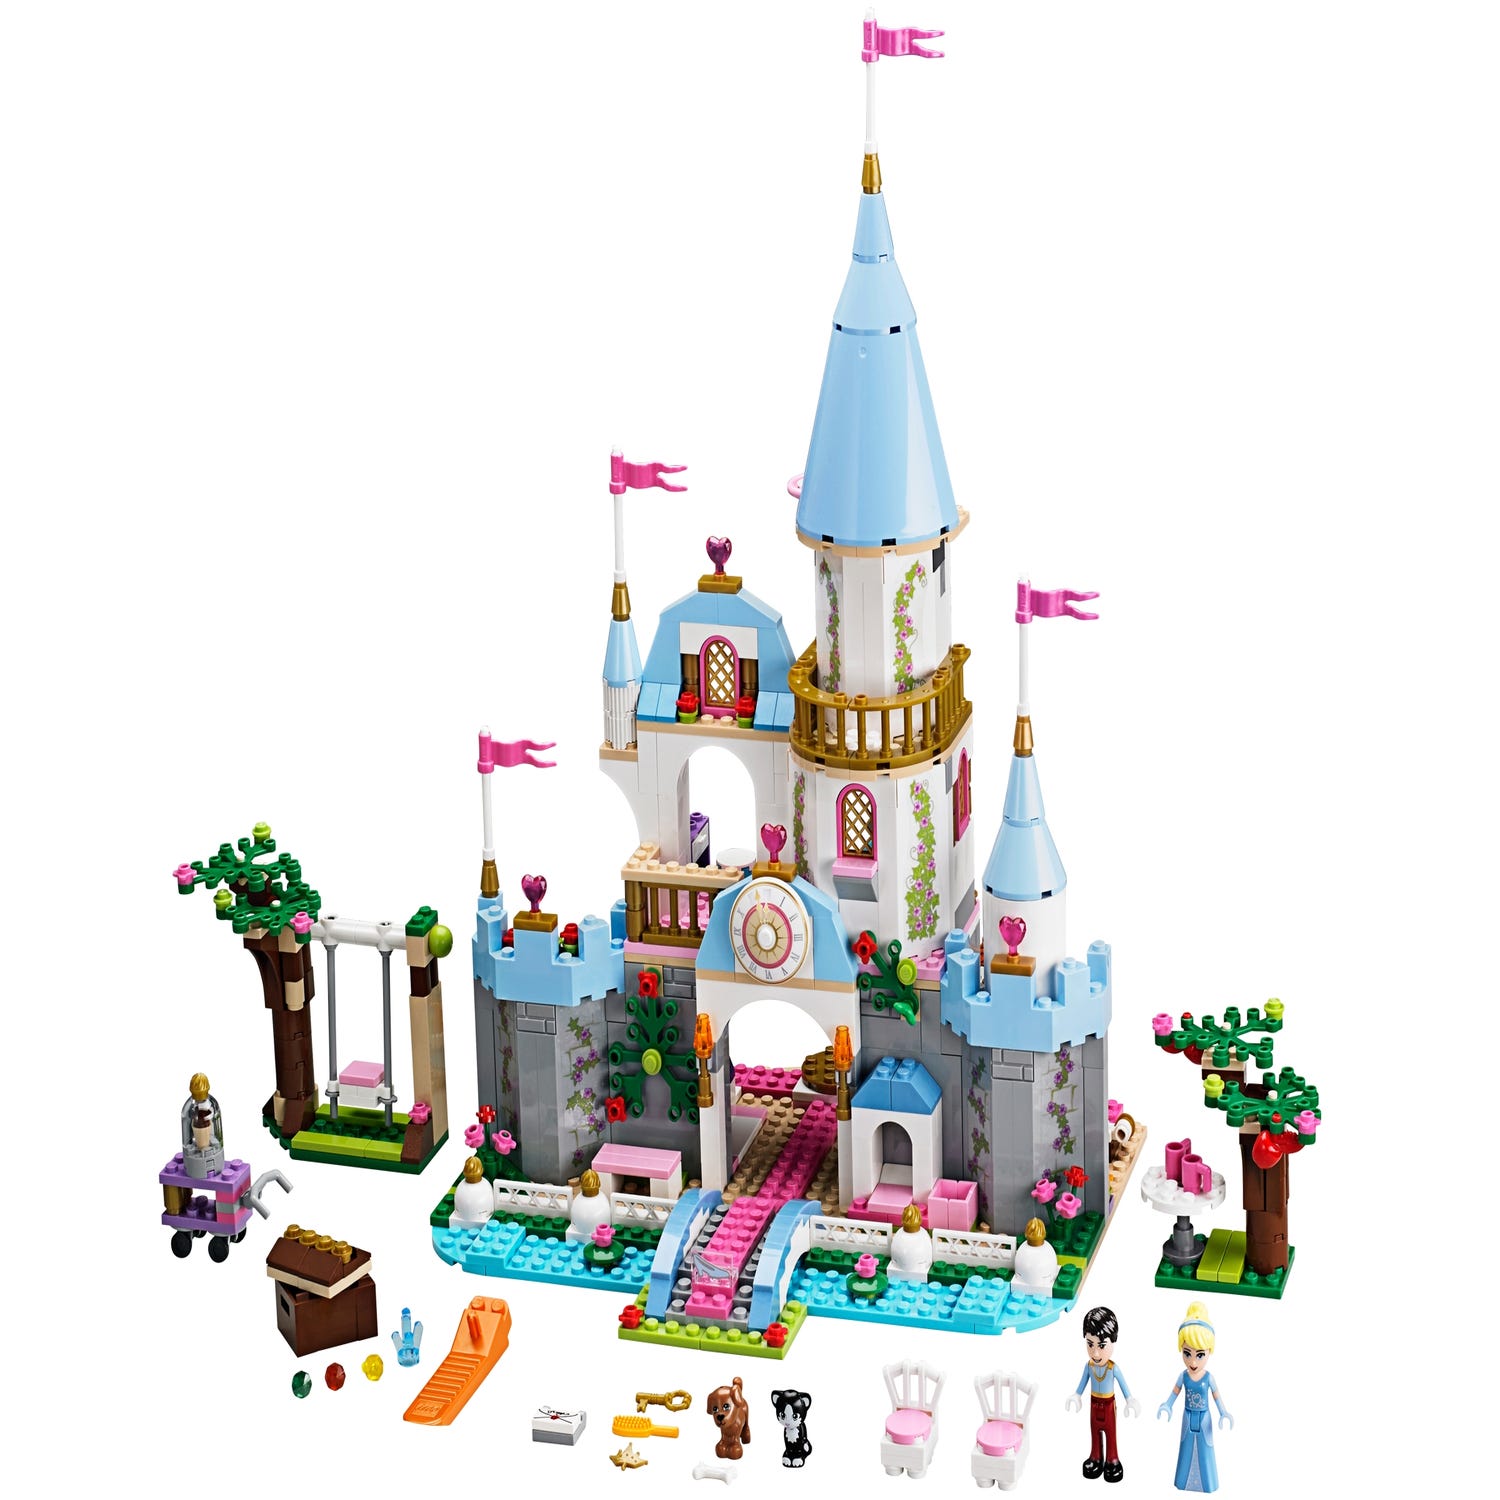 Cinderella's Romantic Castle 41055 | Disneyâ¢ | Buy online at the Official LEGOÂ® Shop US